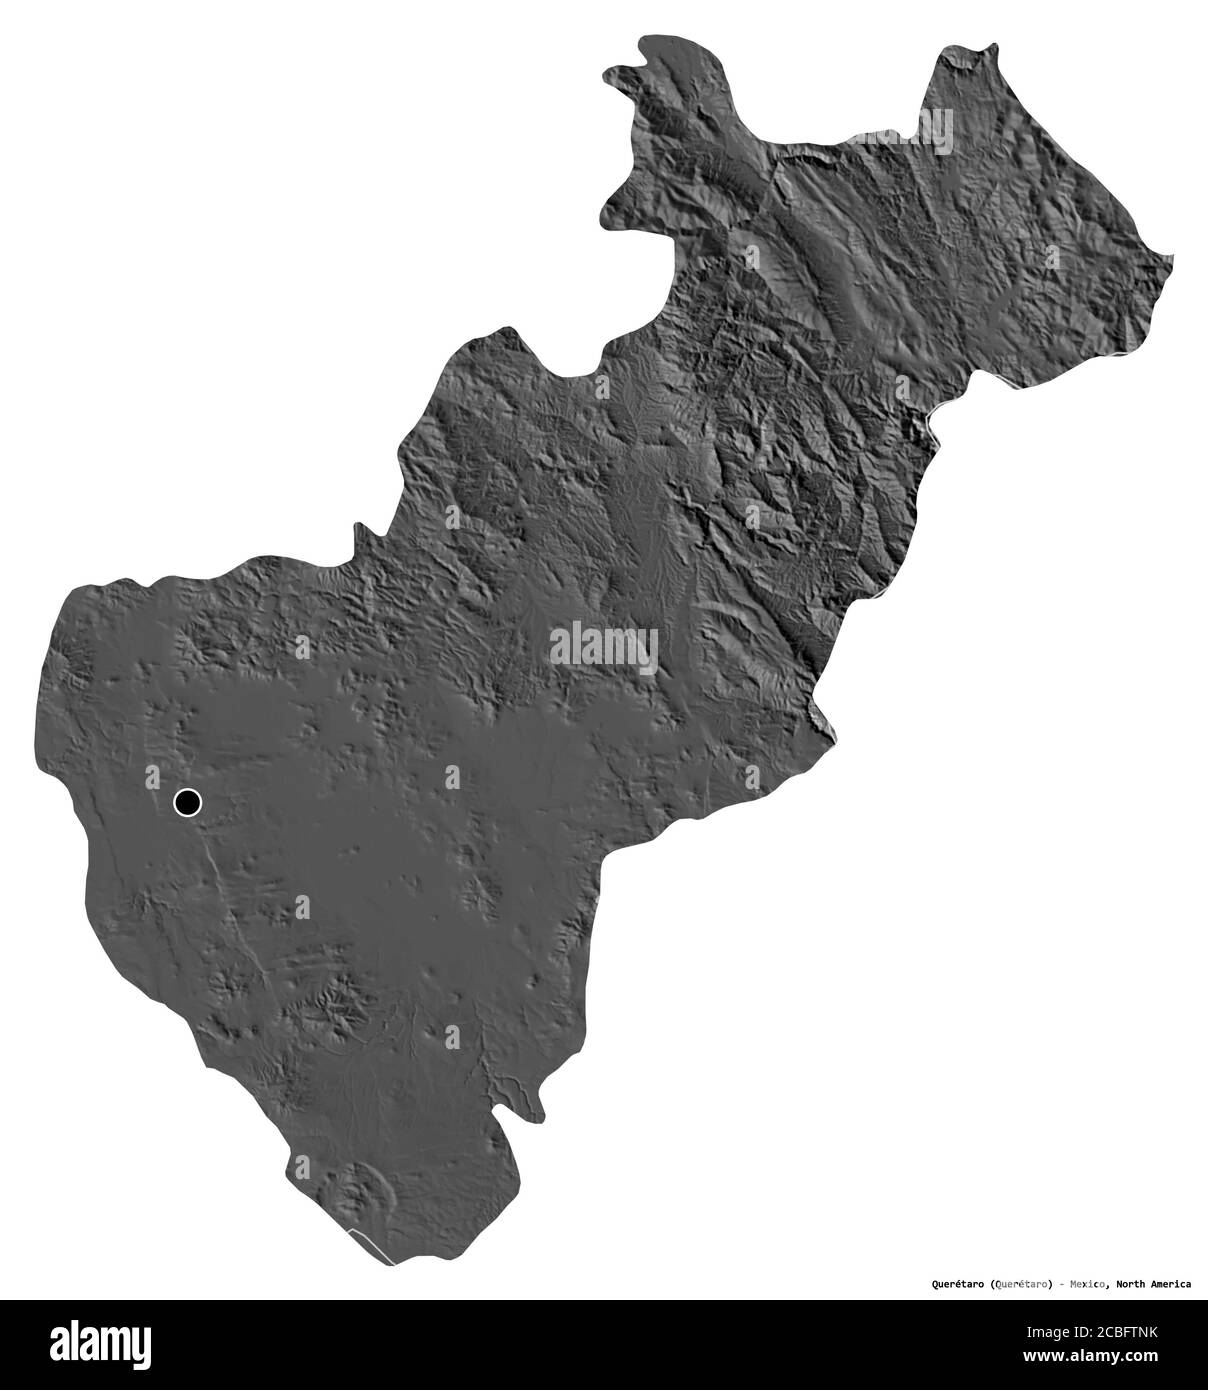 Forme de Querétaro, état du Mexique, avec sa capitale isolée sur fond blanc. Carte d'élévation à deux niveaux. Rendu 3D Banque D'Images